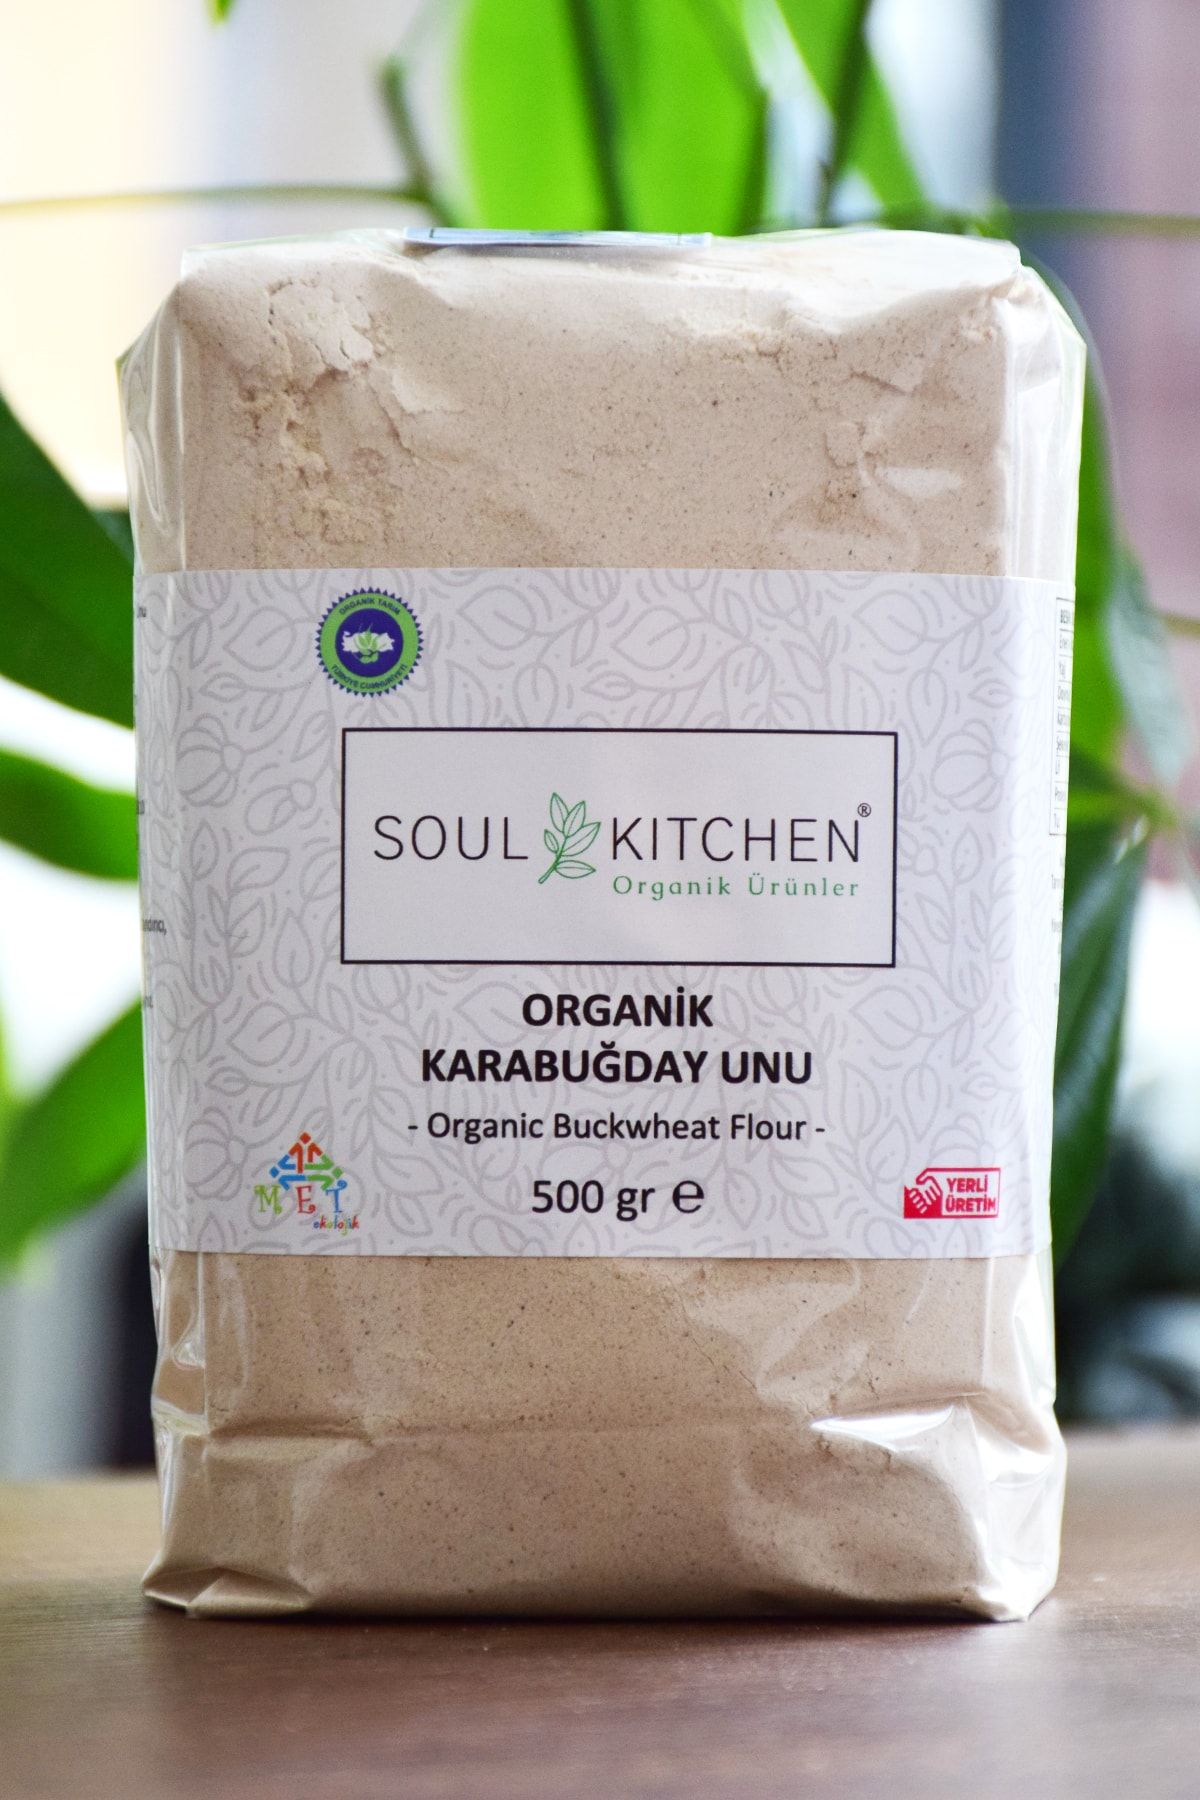 Soul Kitchen Organik Ürünler Organik Karabuğday Unu 500gr